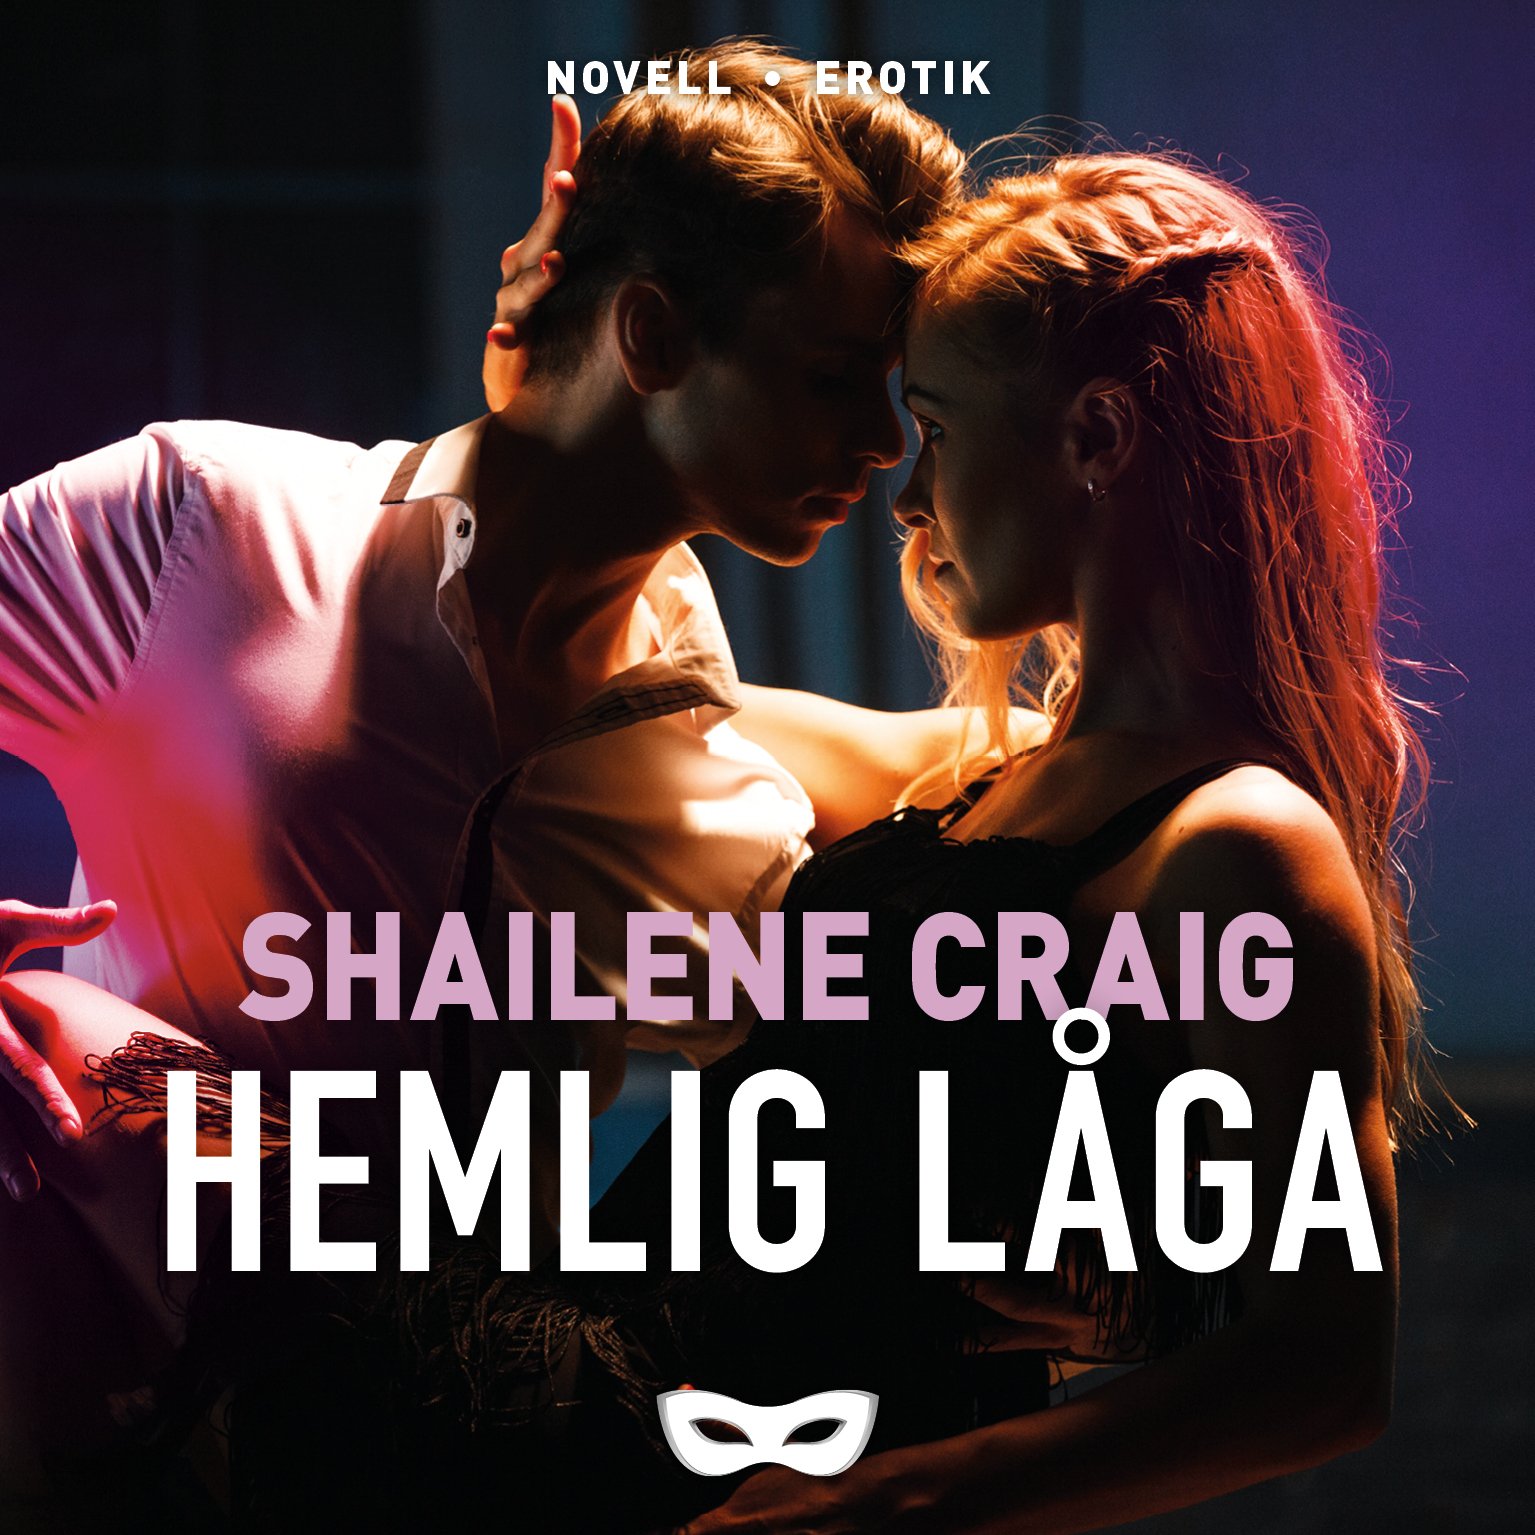 Shailene Craig